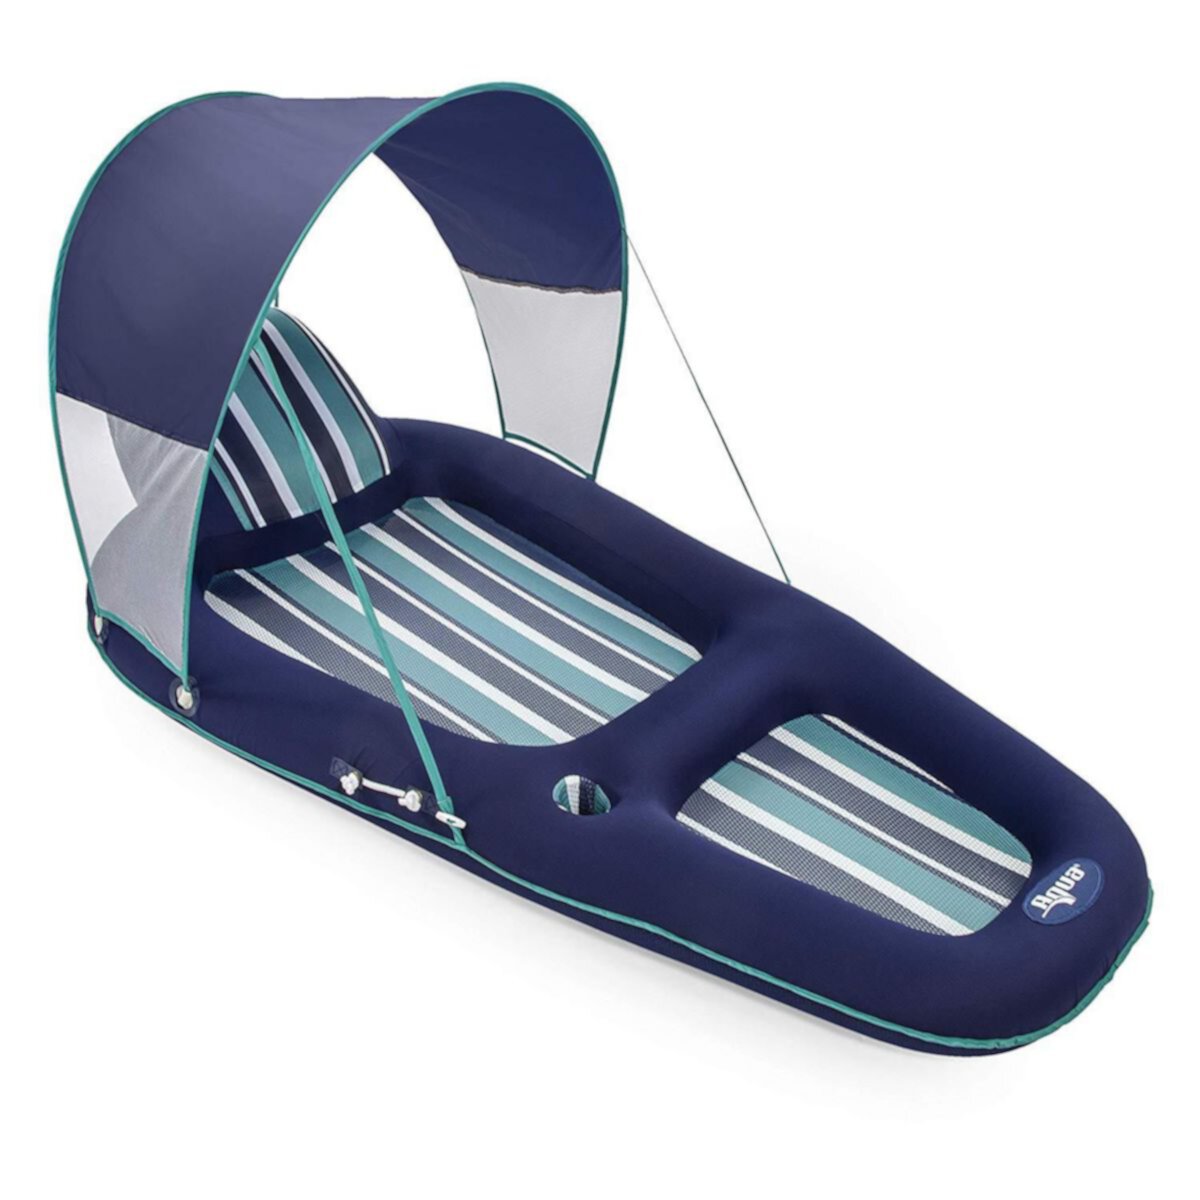 Aqua Leisure Роскошный надувной шезлонг для бассейна с навесом от солнца, синий Aqua